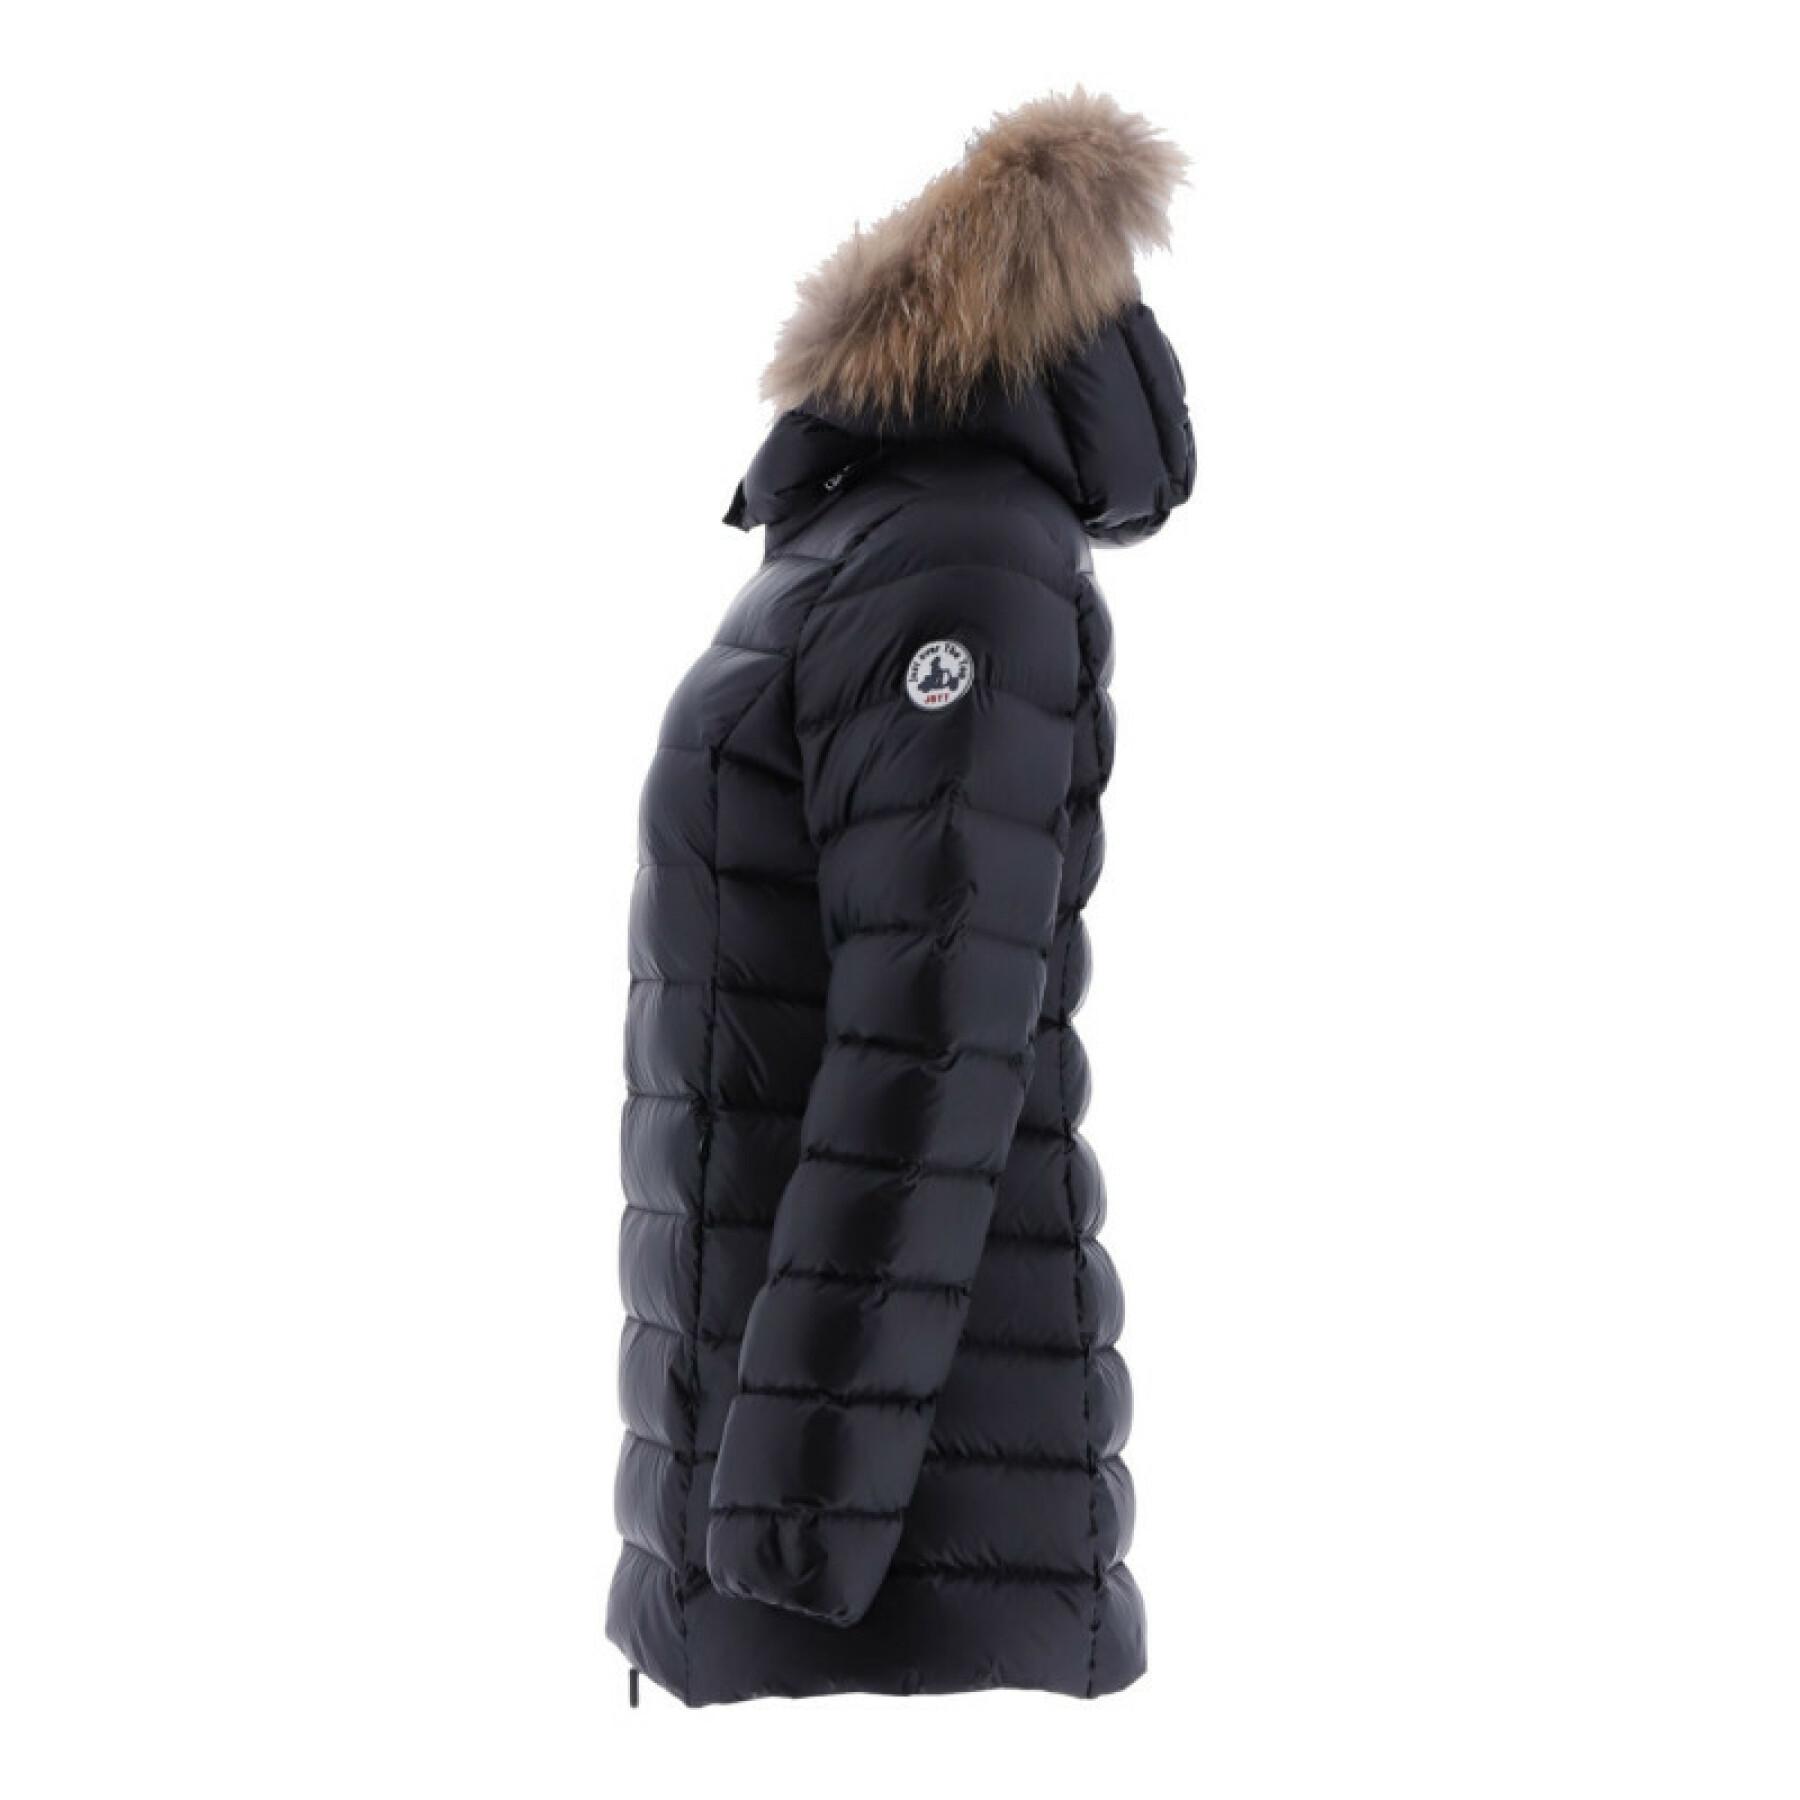 Women's hooded jacket Jott Perle Mi-long Basic